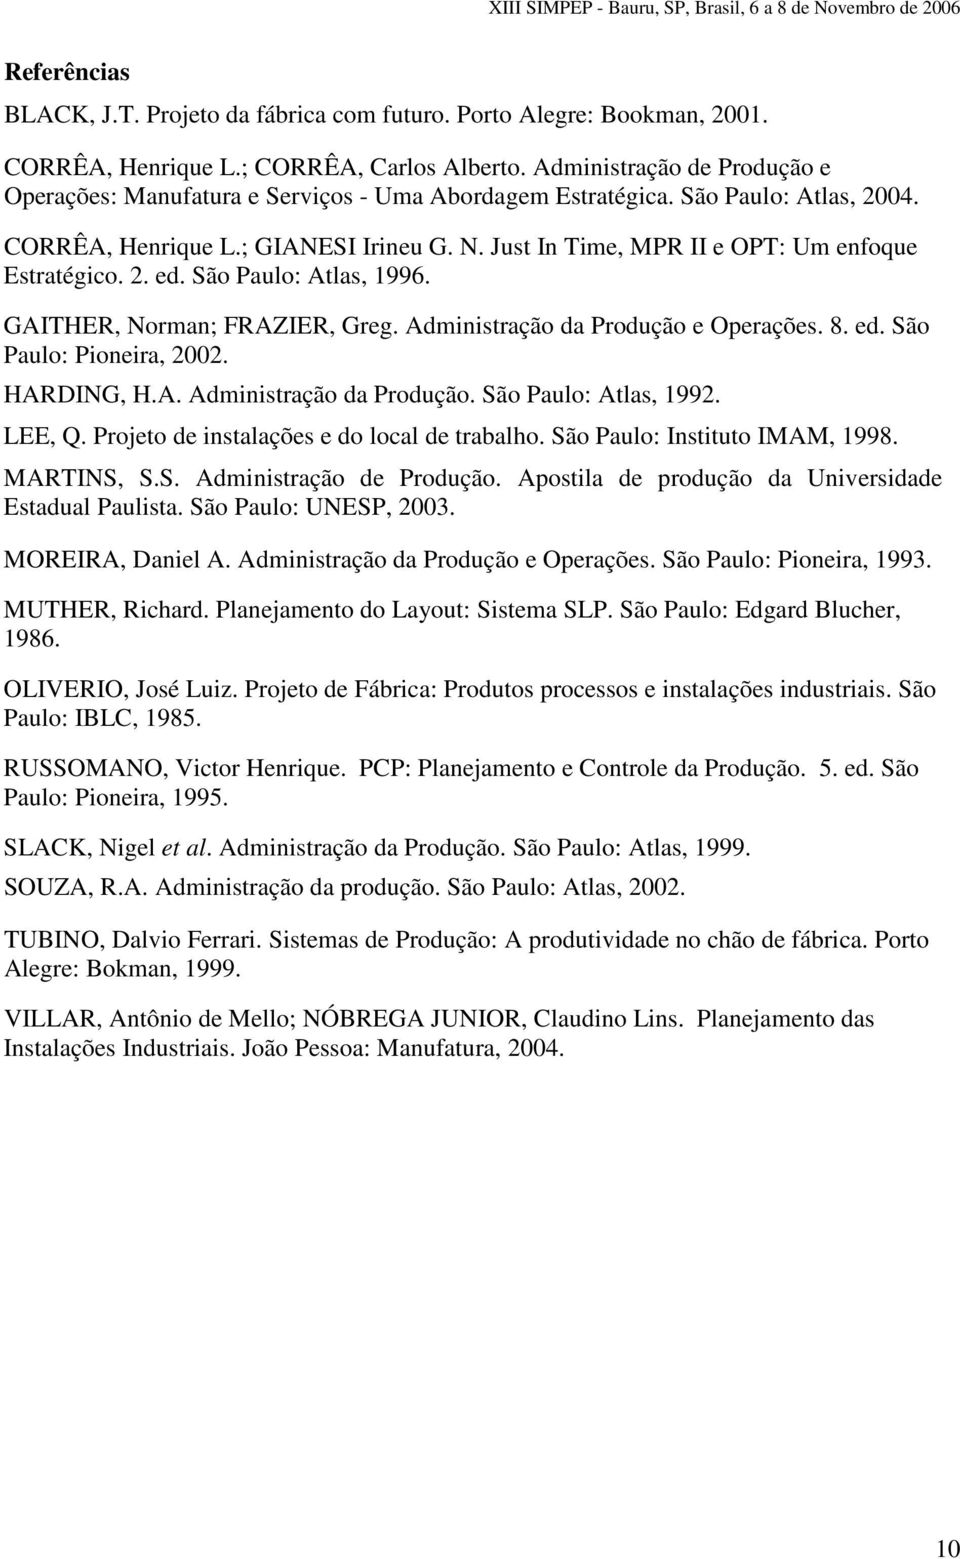 Just In Time, MPR II e OPT: Um enfoque Estratégico. 2. ed. São Paulo: Atlas, 1996. GAITHER, Norman; FRAZIER, Greg. Administração da Produção e Operações. 8. ed. São Paulo: Pioneira, 2002. HARDING, H.